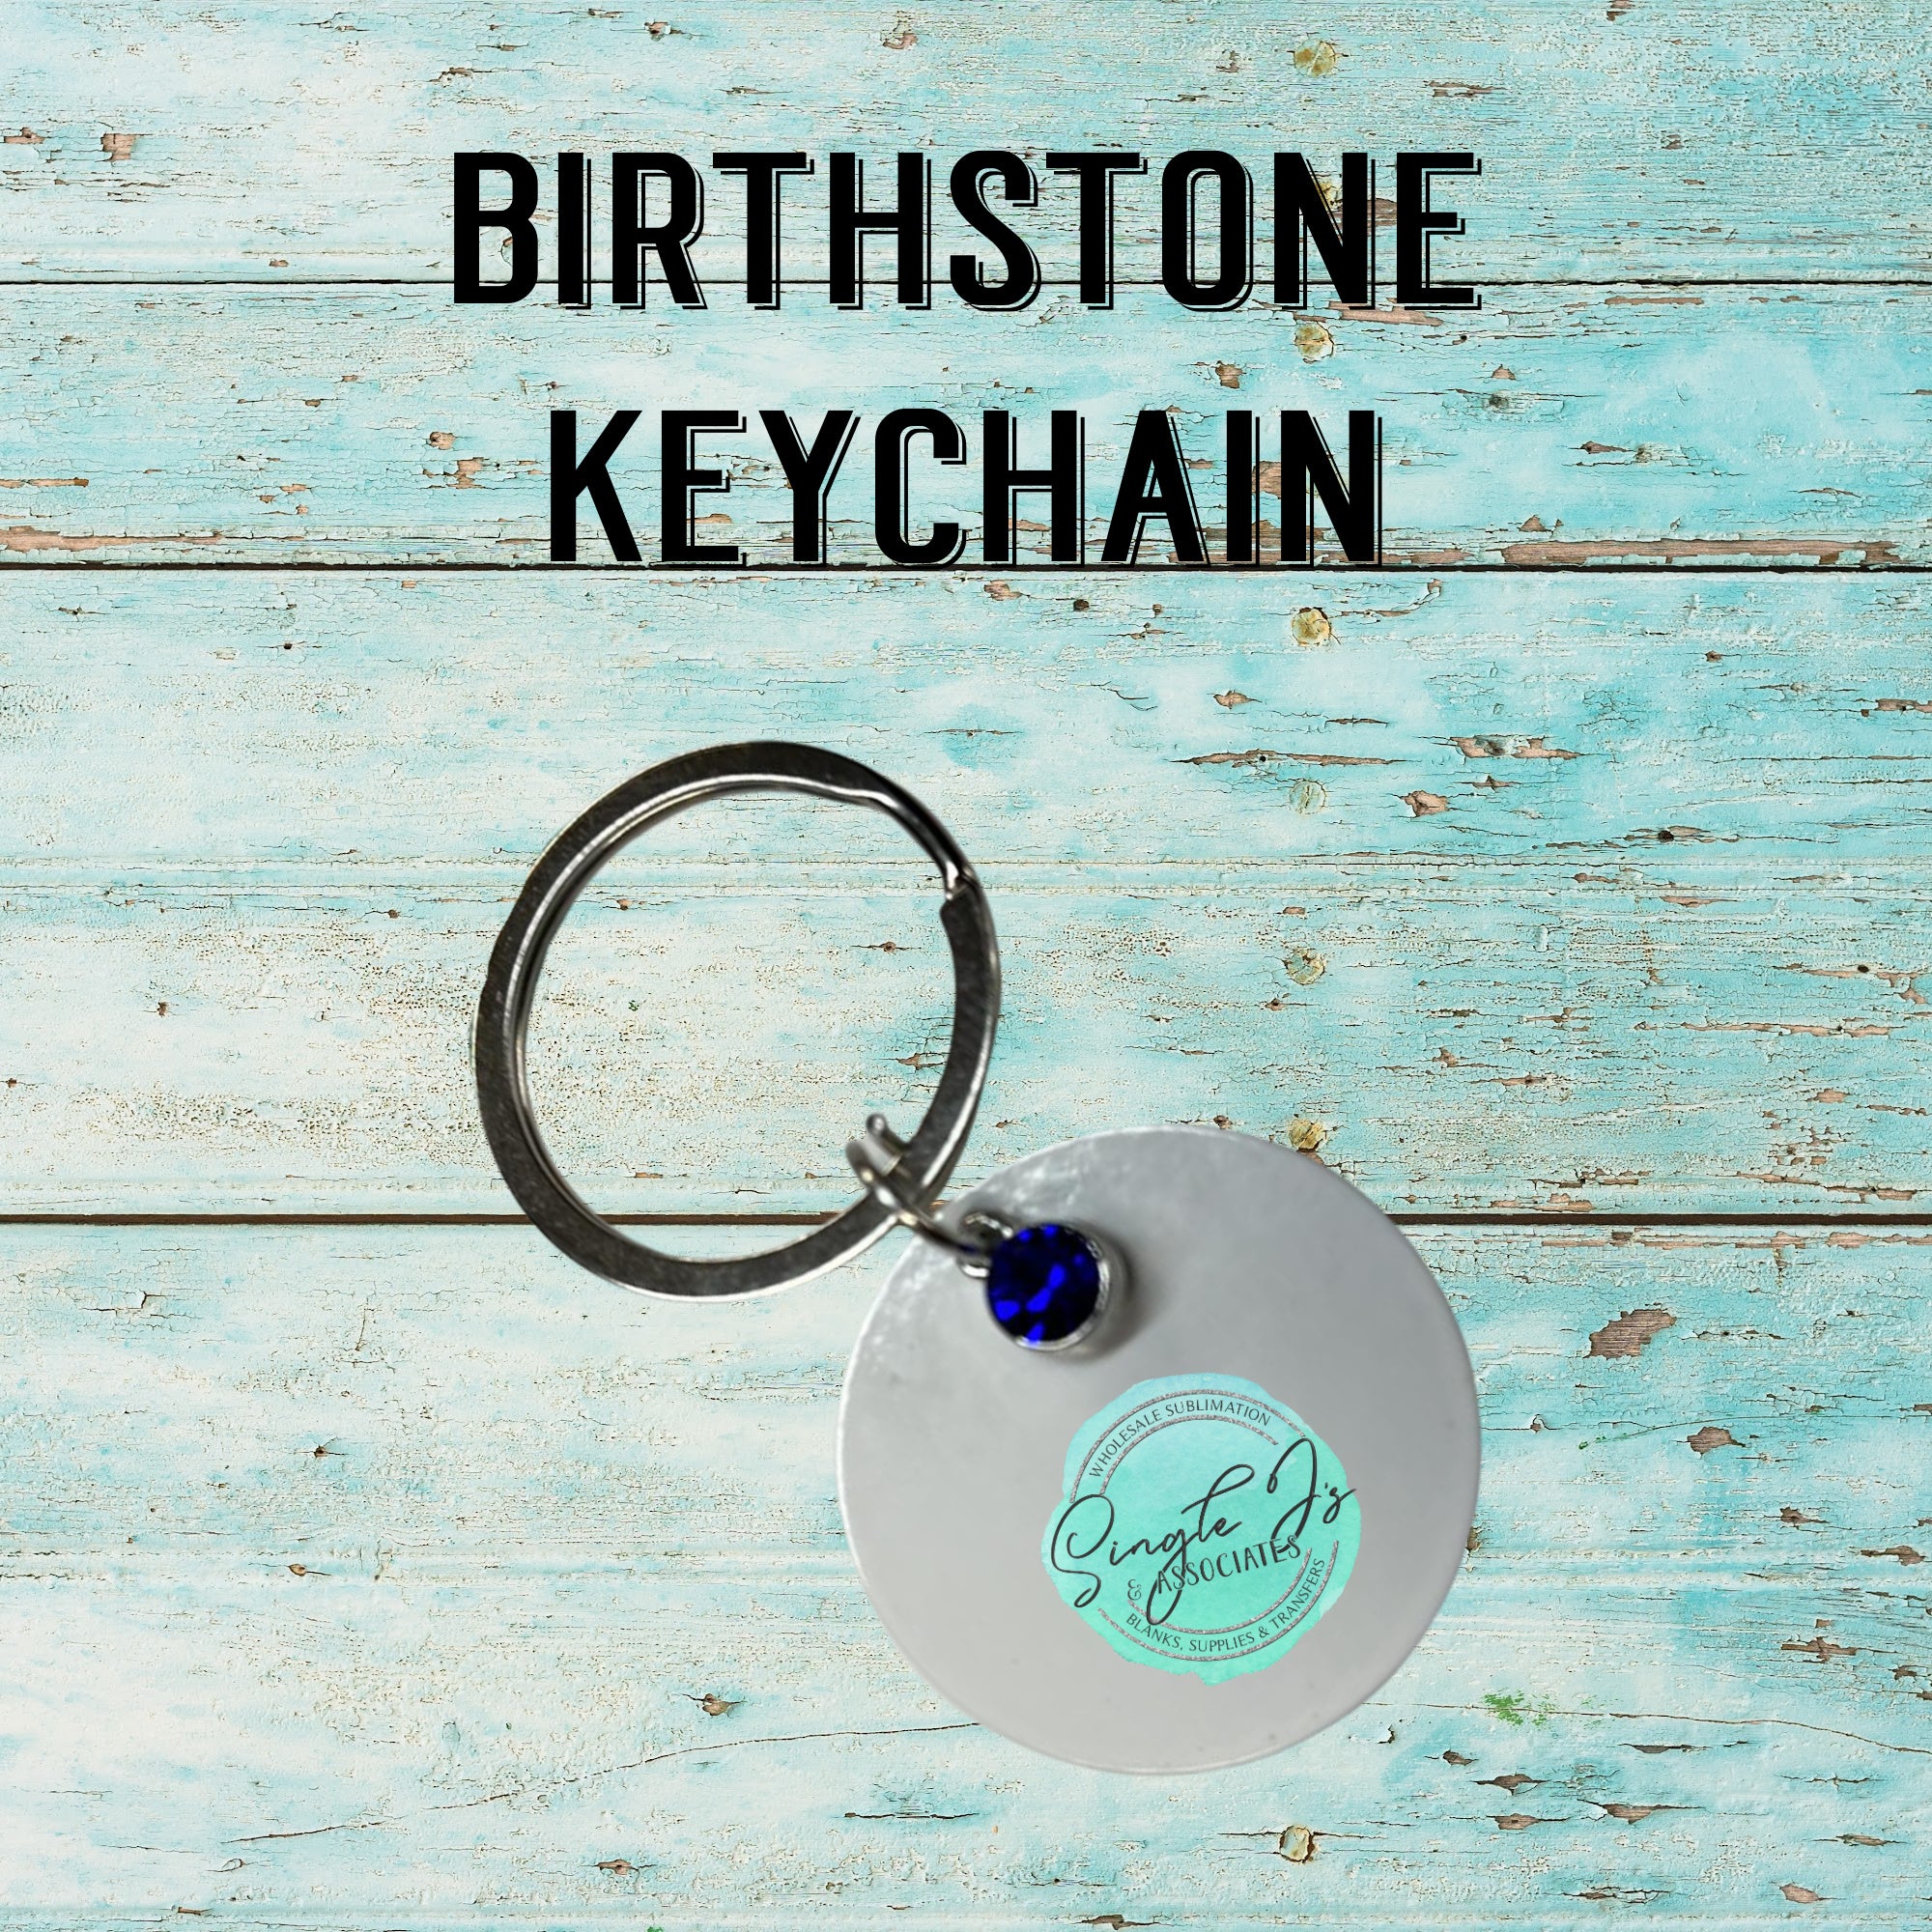 One Birthstone Charm to Add to Keychain